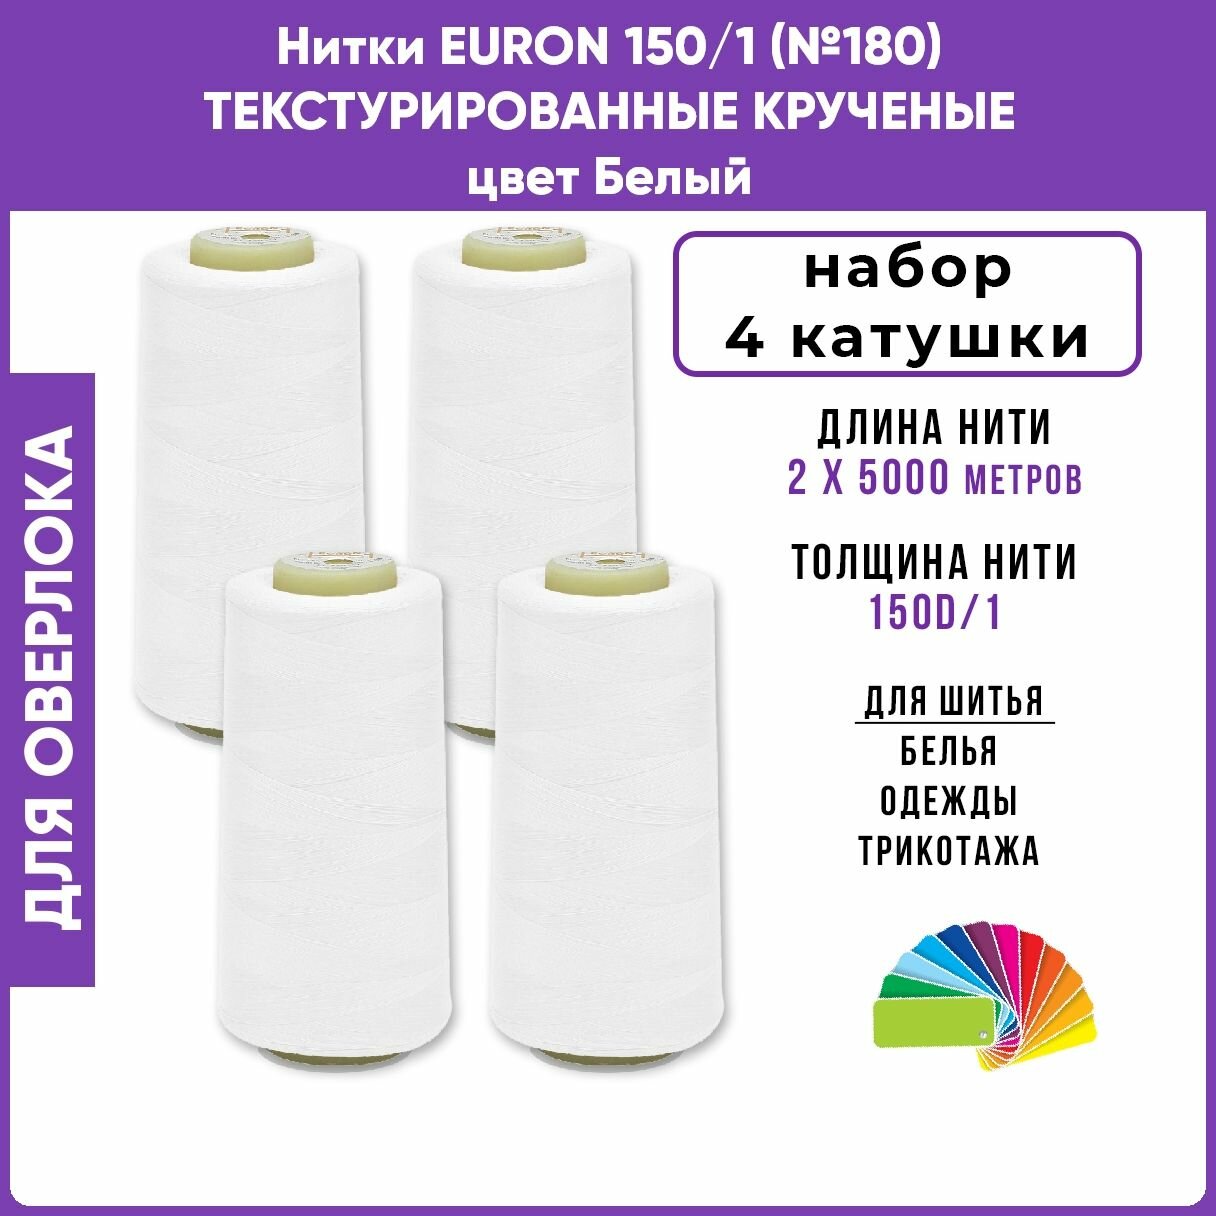 Нитки для шитья текстурированные крученые EURON E150 цвет Белый, 4шт, 4х5000м, 100% п/э для оверлока на петлители, промышленные